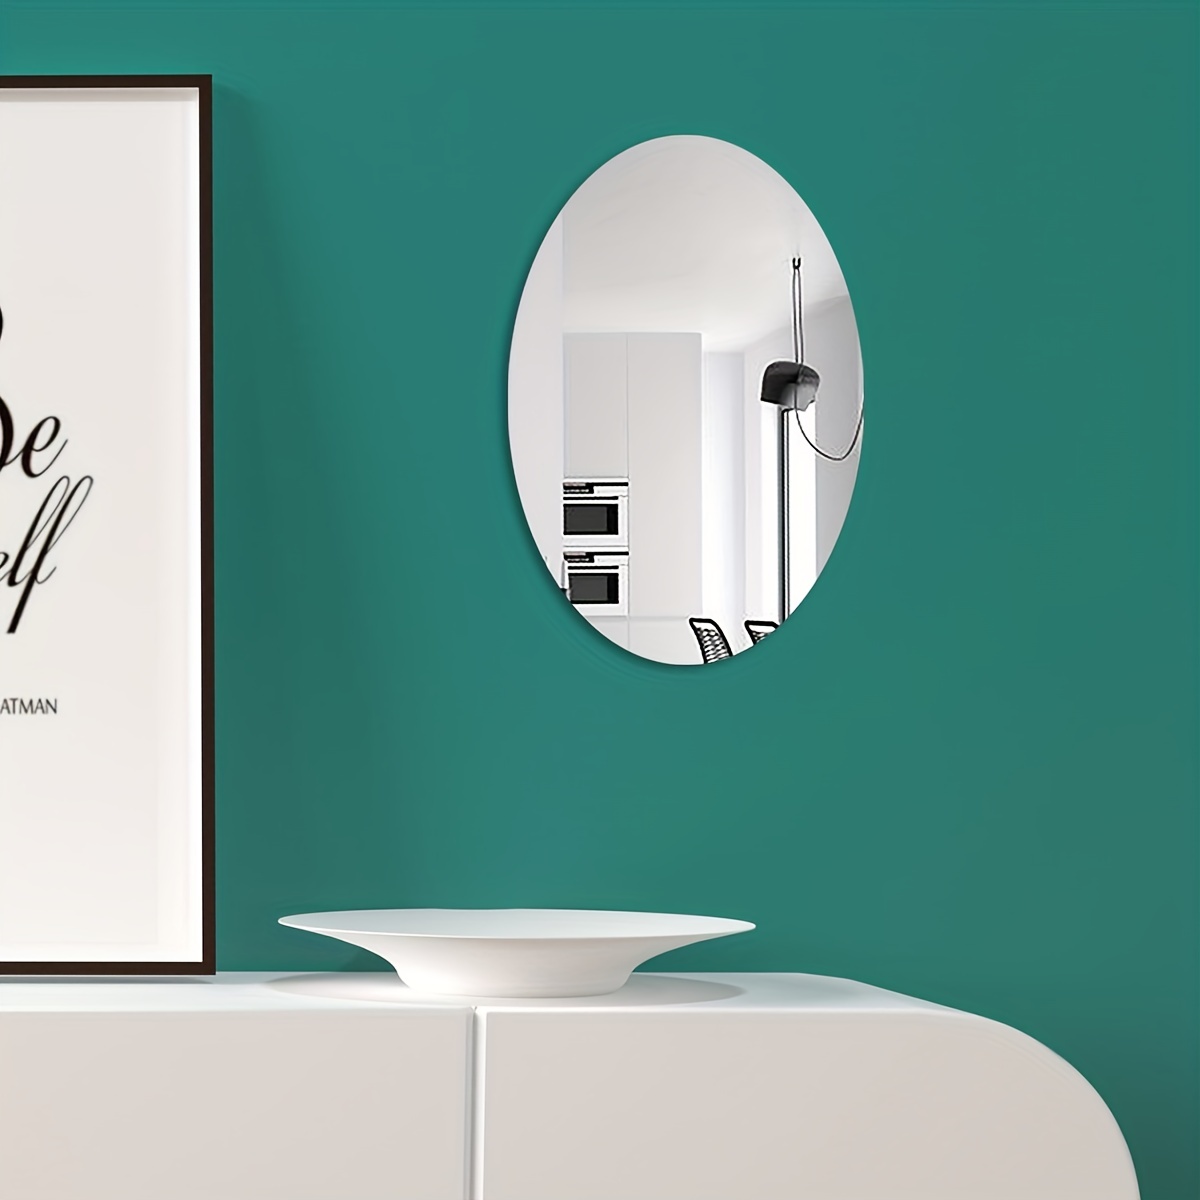  4 Stück Selbstklebende Spiegel, 20x20cm Quadrat Spiegelfliesen  Selbstklebend Acryl Spiegel, Flexibler Spiegel Kleben Nicht-Glas  Rahmenloser, Klebespiegel für Schrank Wanddekoration